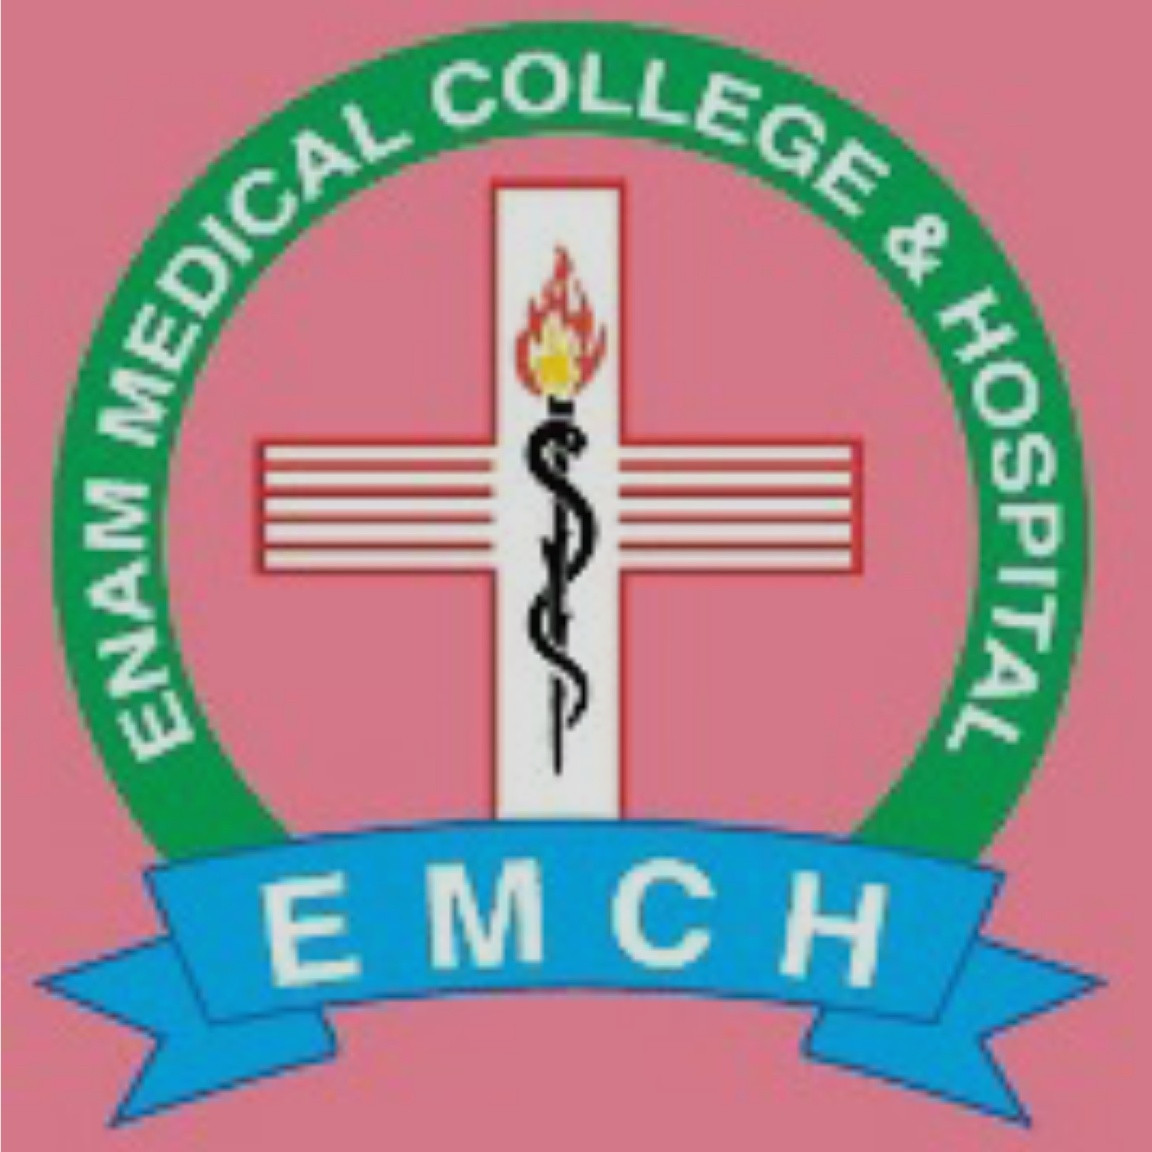 Enam-Medical-College-Hospital_gkworks